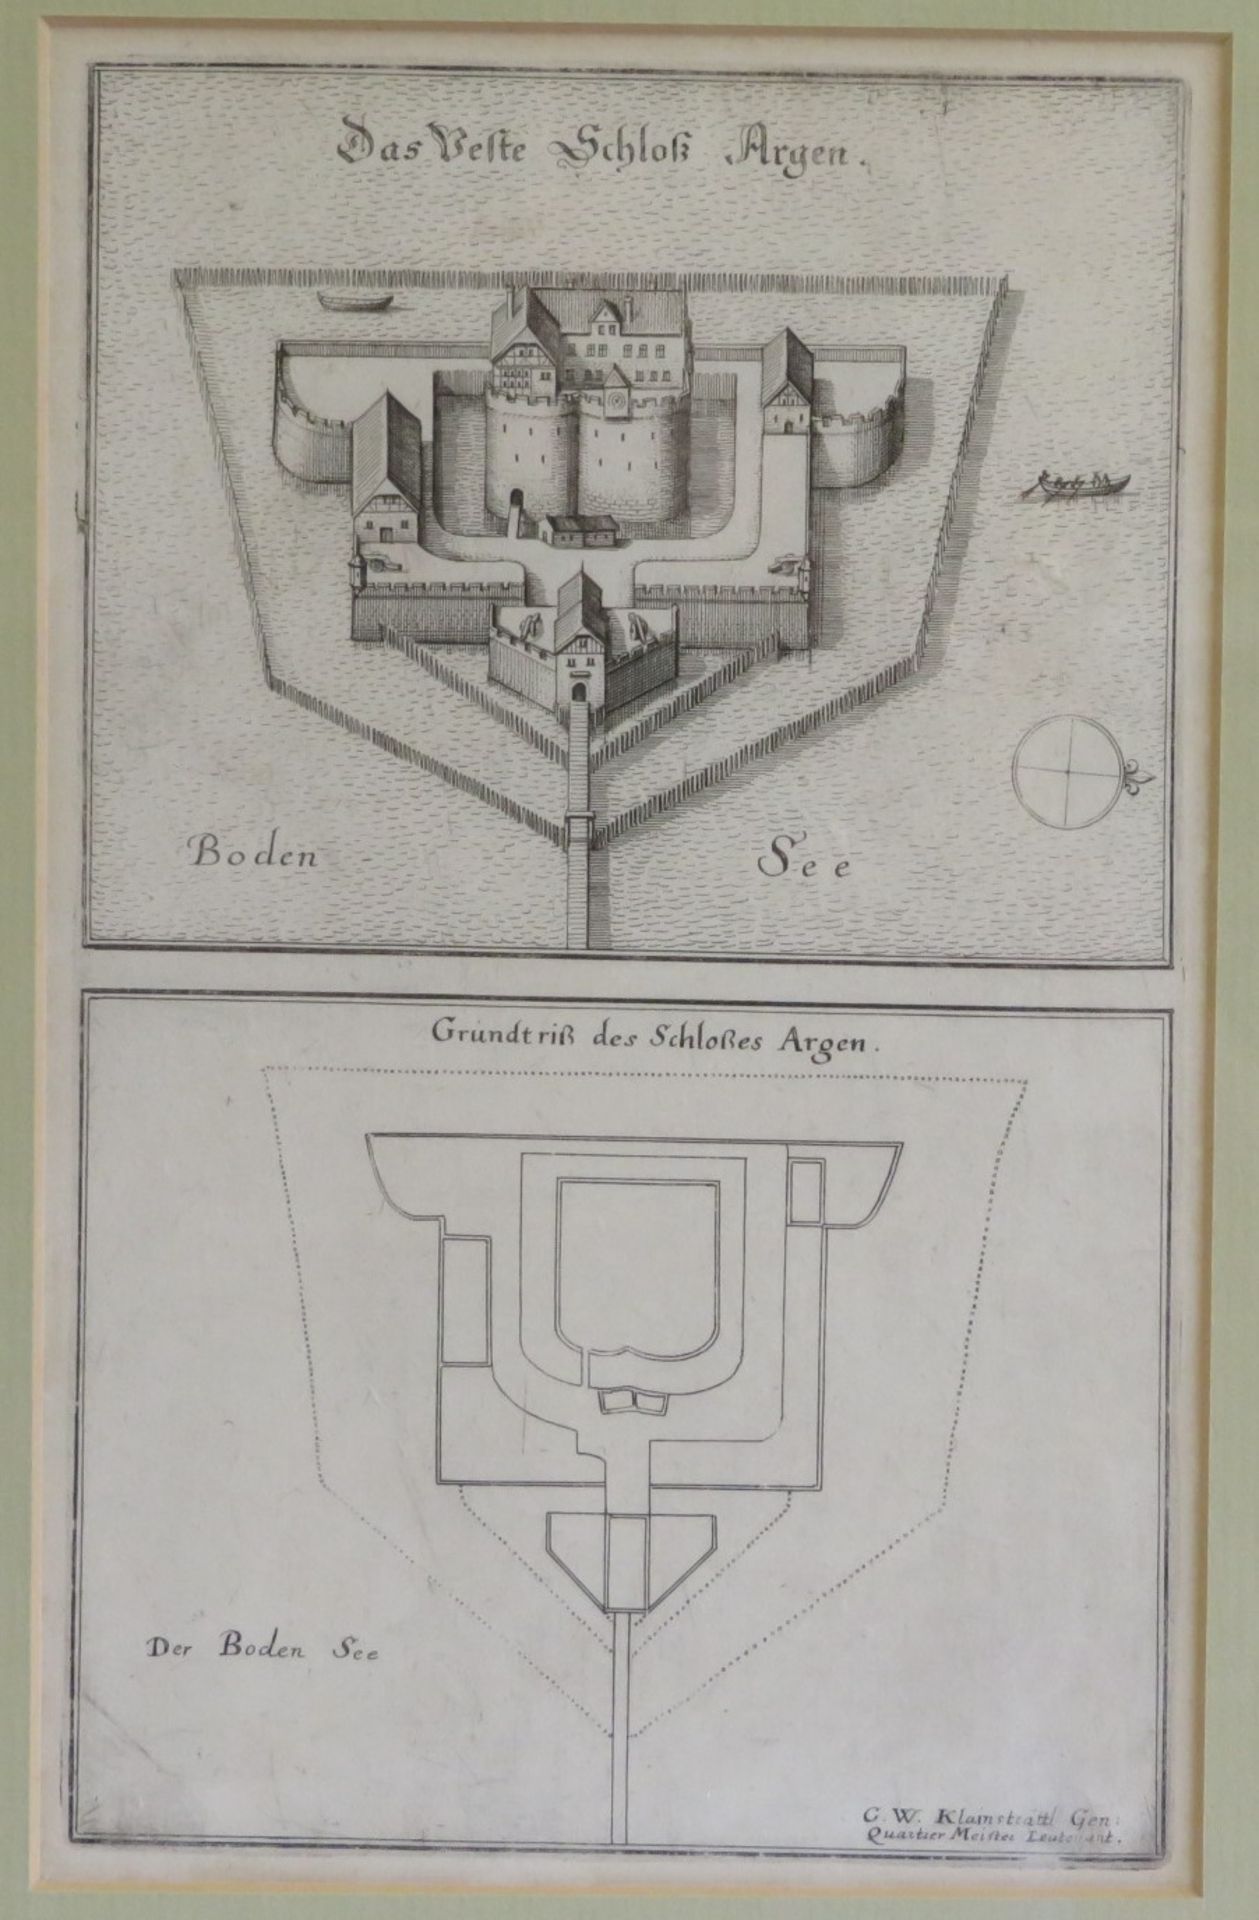 Kupferstich von G.W. Klainsträttl aus Merian, "Das Feste Schloß Argen" (Gesamtansicht aus der